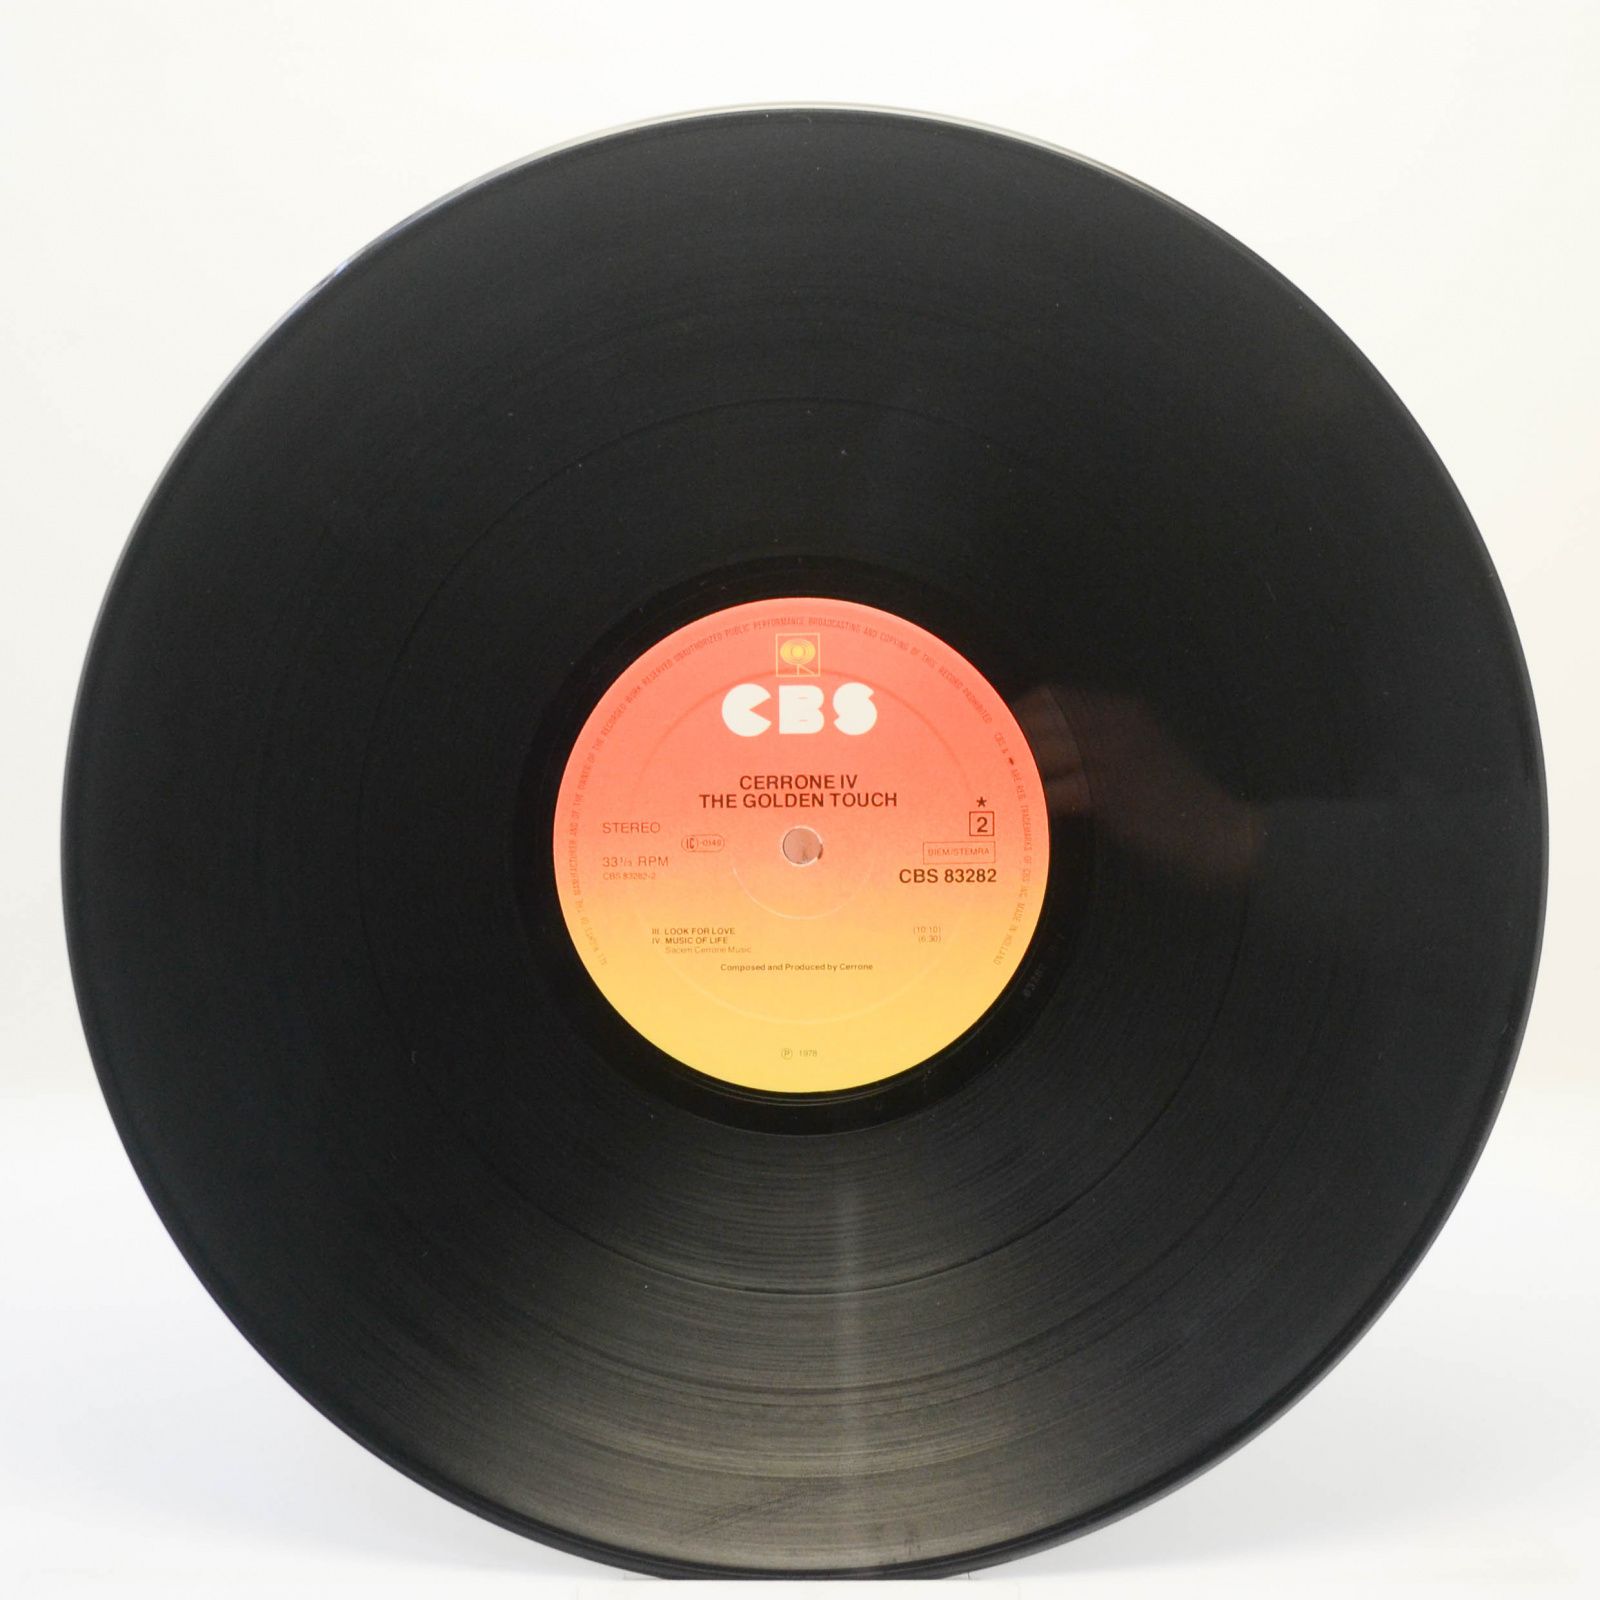 Cerrone — Cerrone IV - The Golden Touch, 1978